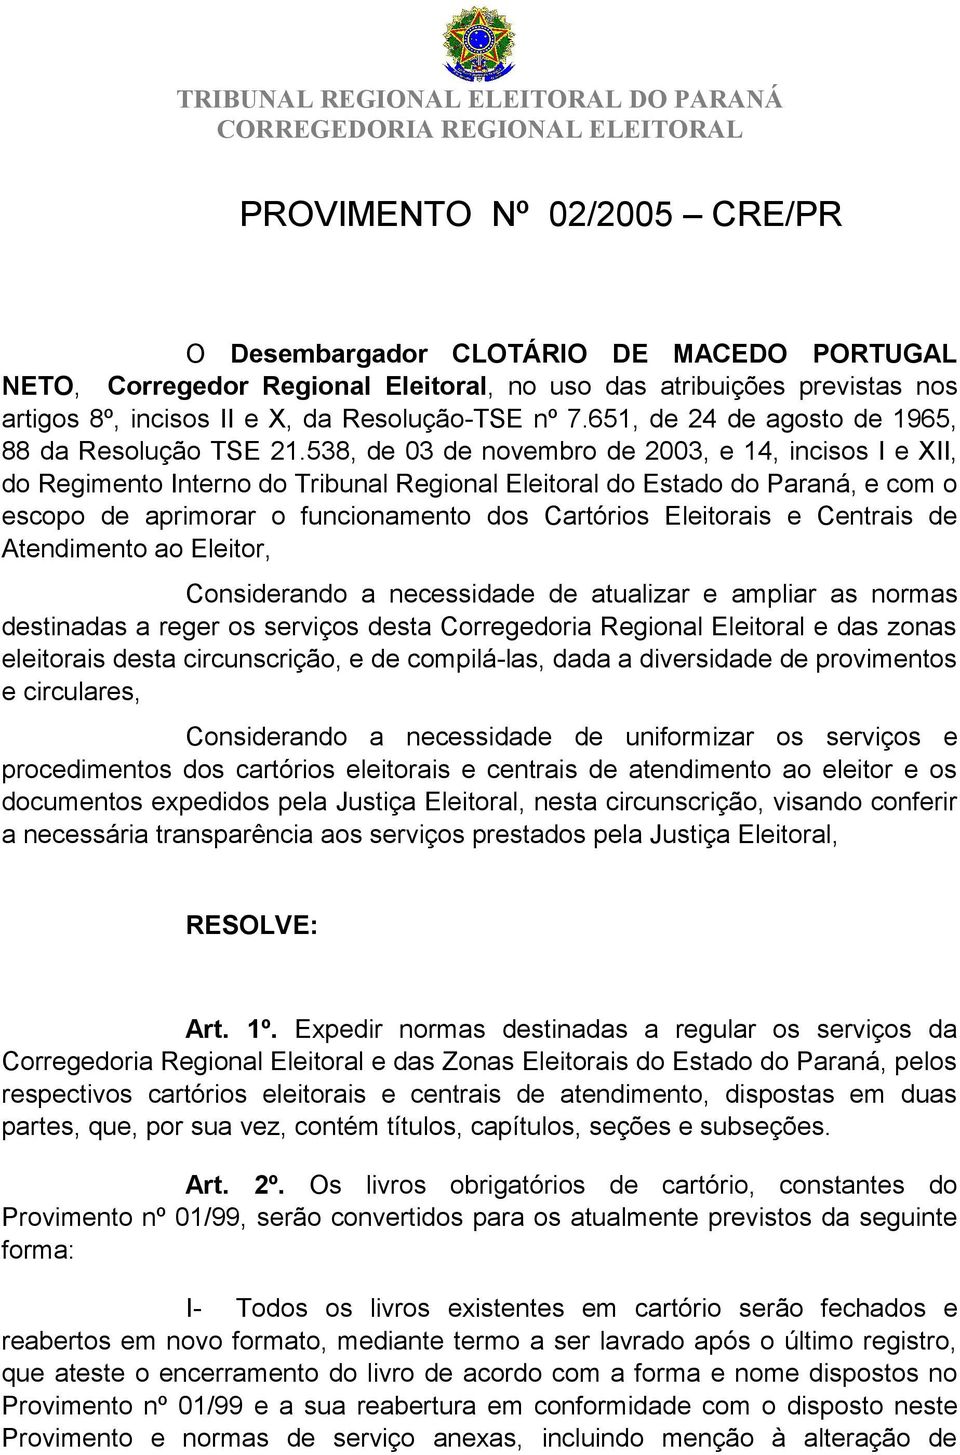 538, de 03 de novembro de 2003, e 14, incisos I e XII, do Regimento Interno do Tribunal Regional Eleitoral do Estado do Paraná, e com o escopo de aprimorar o funcionamento dos Cartórios Eleitorais e